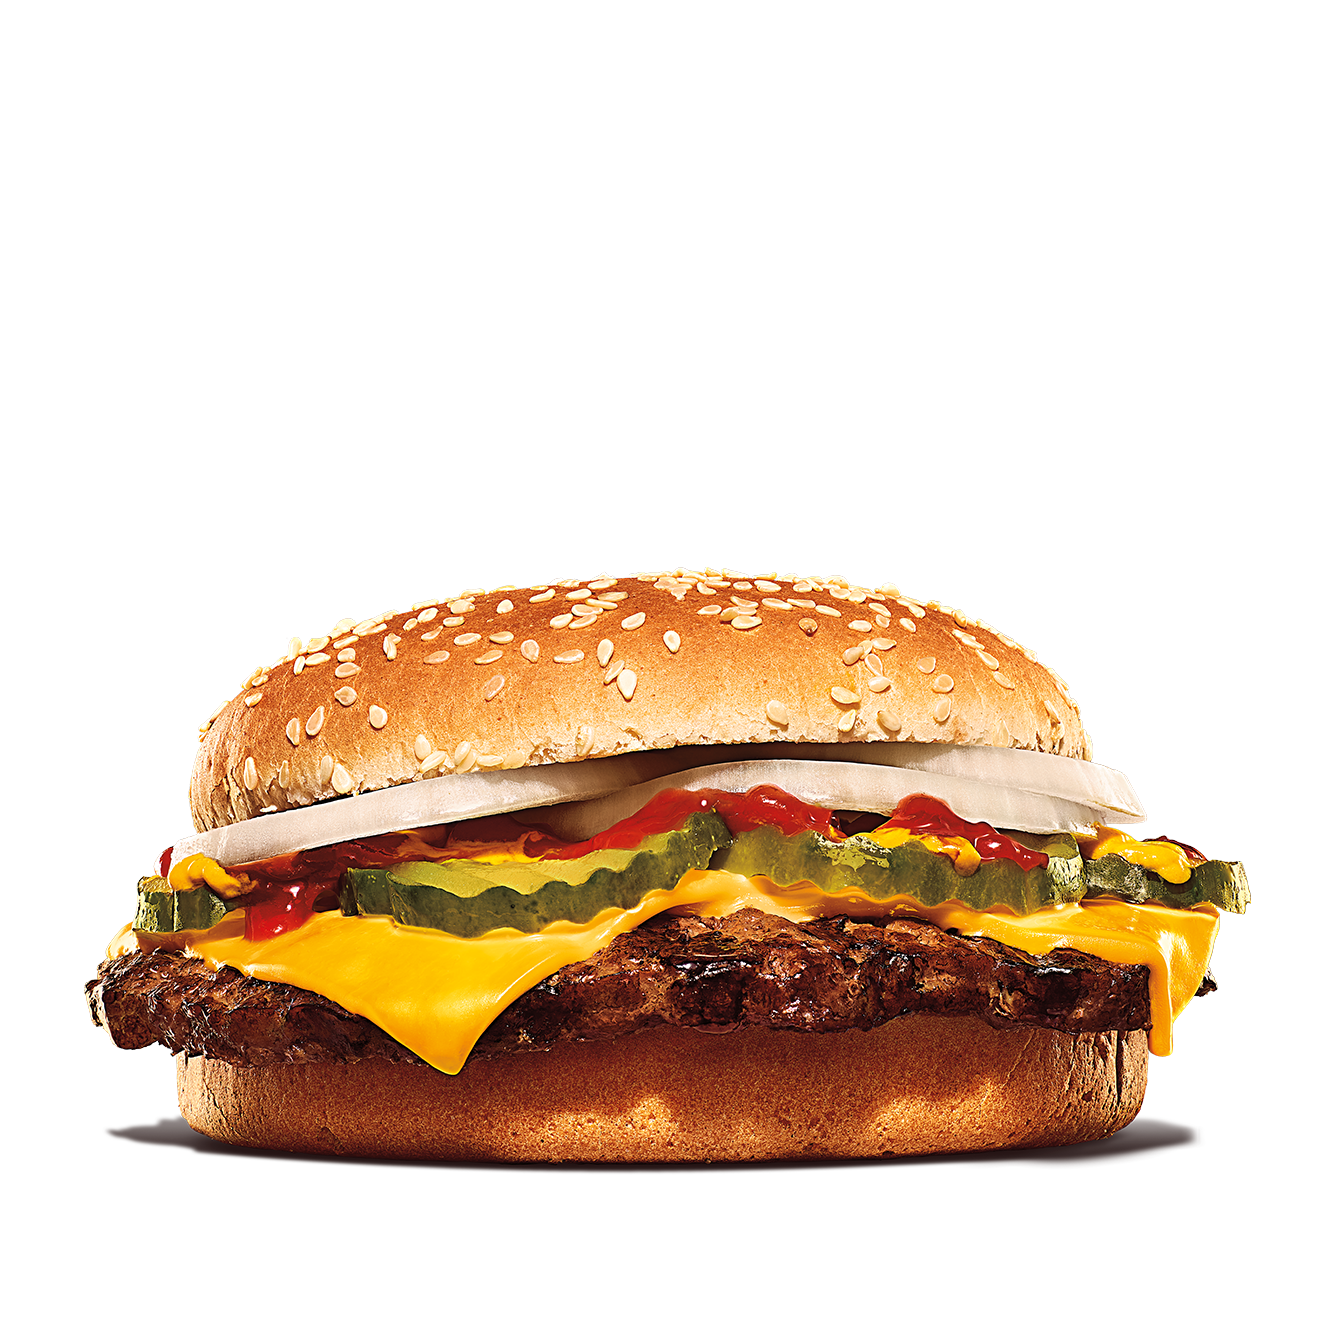 Calories in Burger King Single Quarter Pound King